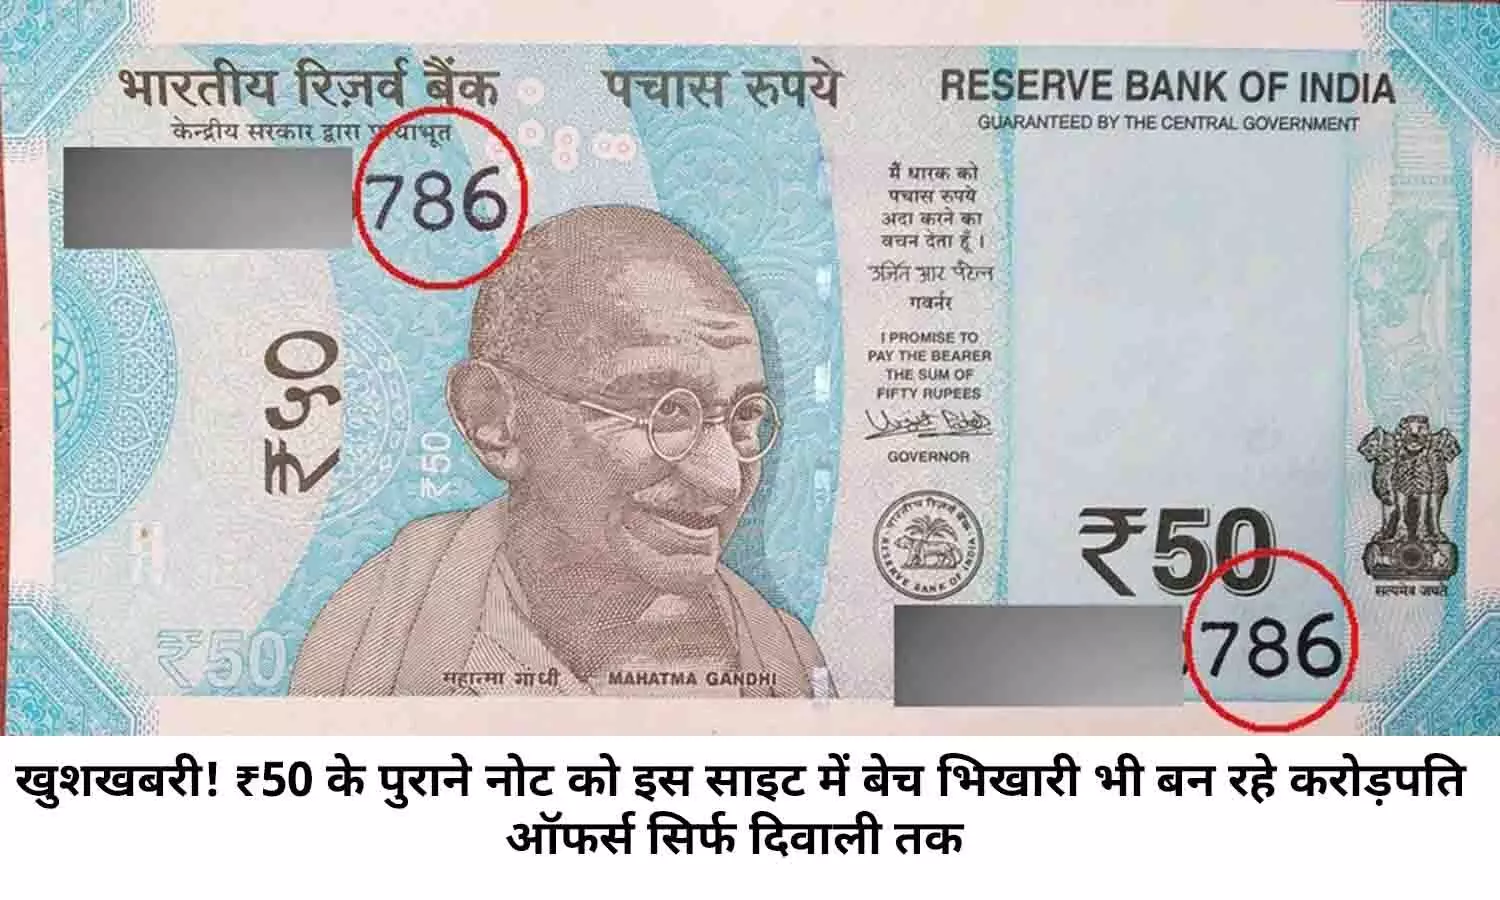 खुशखबरी! ₹50 के पुराने नोट को इस साइट में बेच भिखारी भी बन रहे करोड़पति, ऑफर्स सिर्फ दिवाली तक